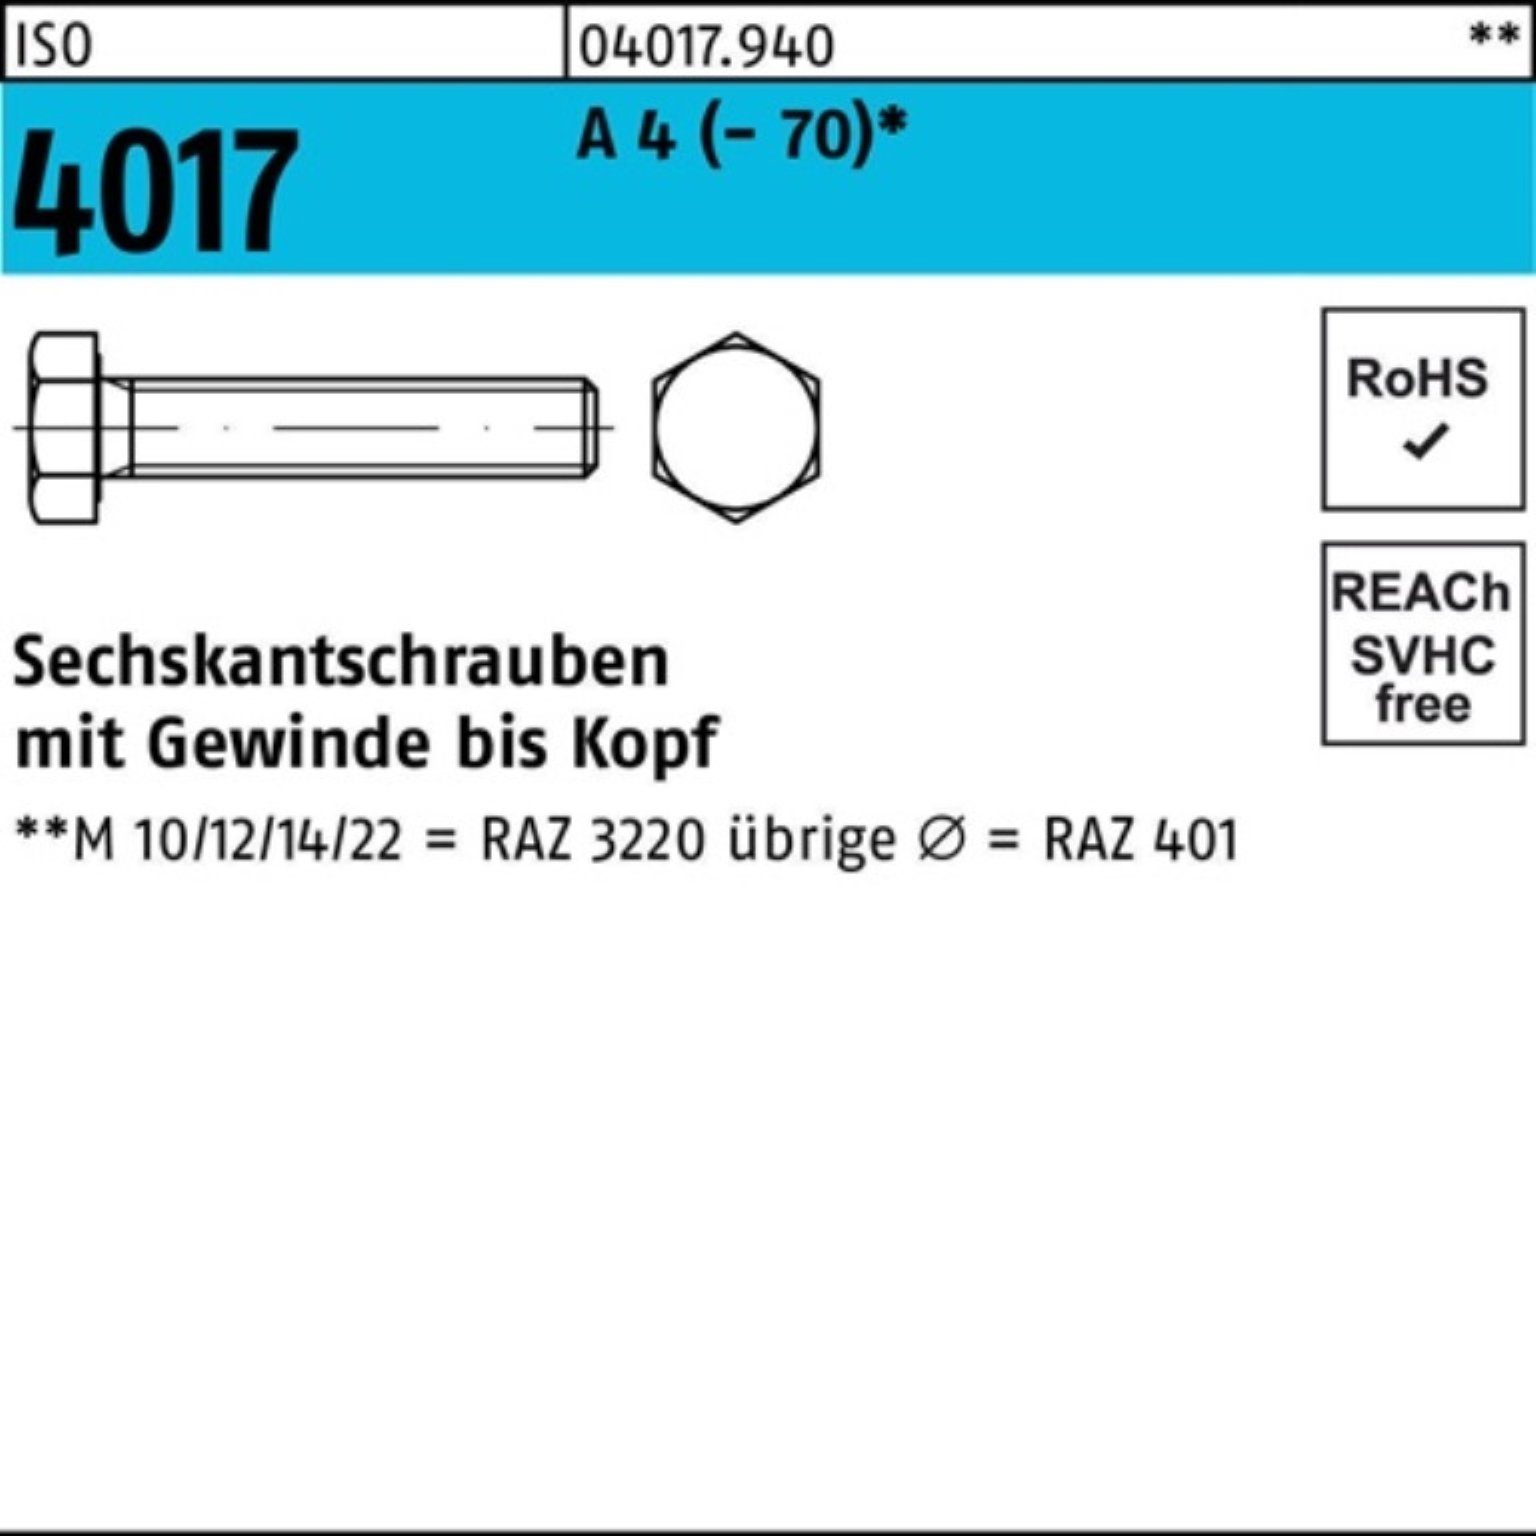 Bufab Sechskantschraube 100er Pack Sechskantschraube ISO 4017 VG M5x 80 A 4 (70) 100 Stück